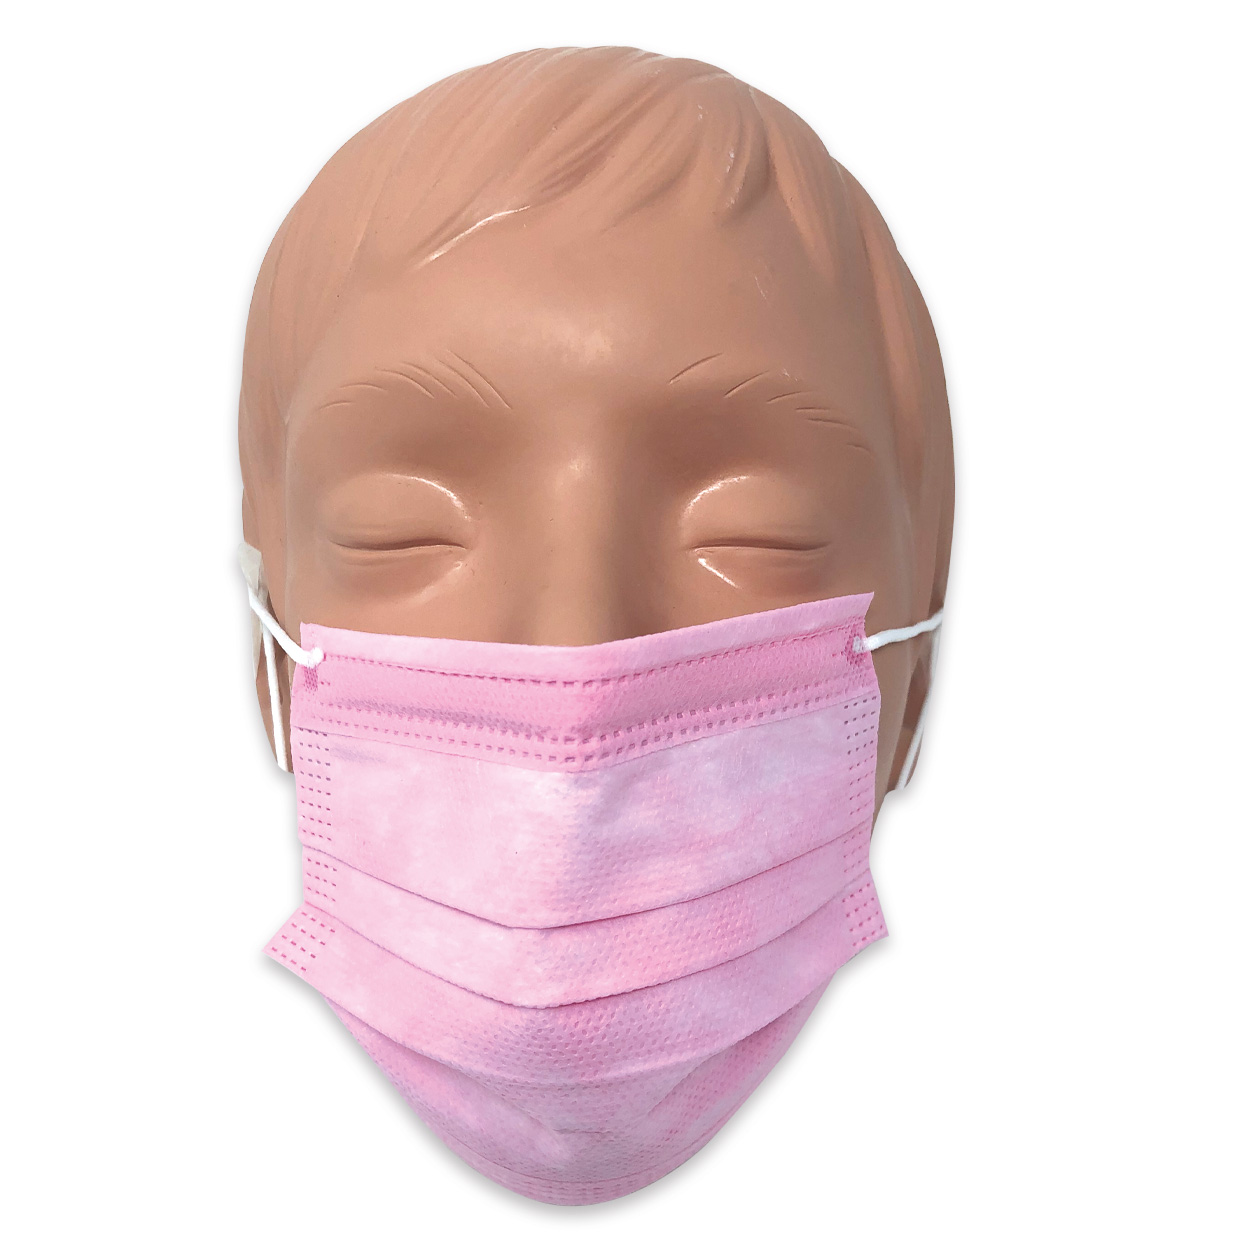 Mundschutz für Kinder in rosa, Typ II, 3-lagig - Packung à 50 Stück